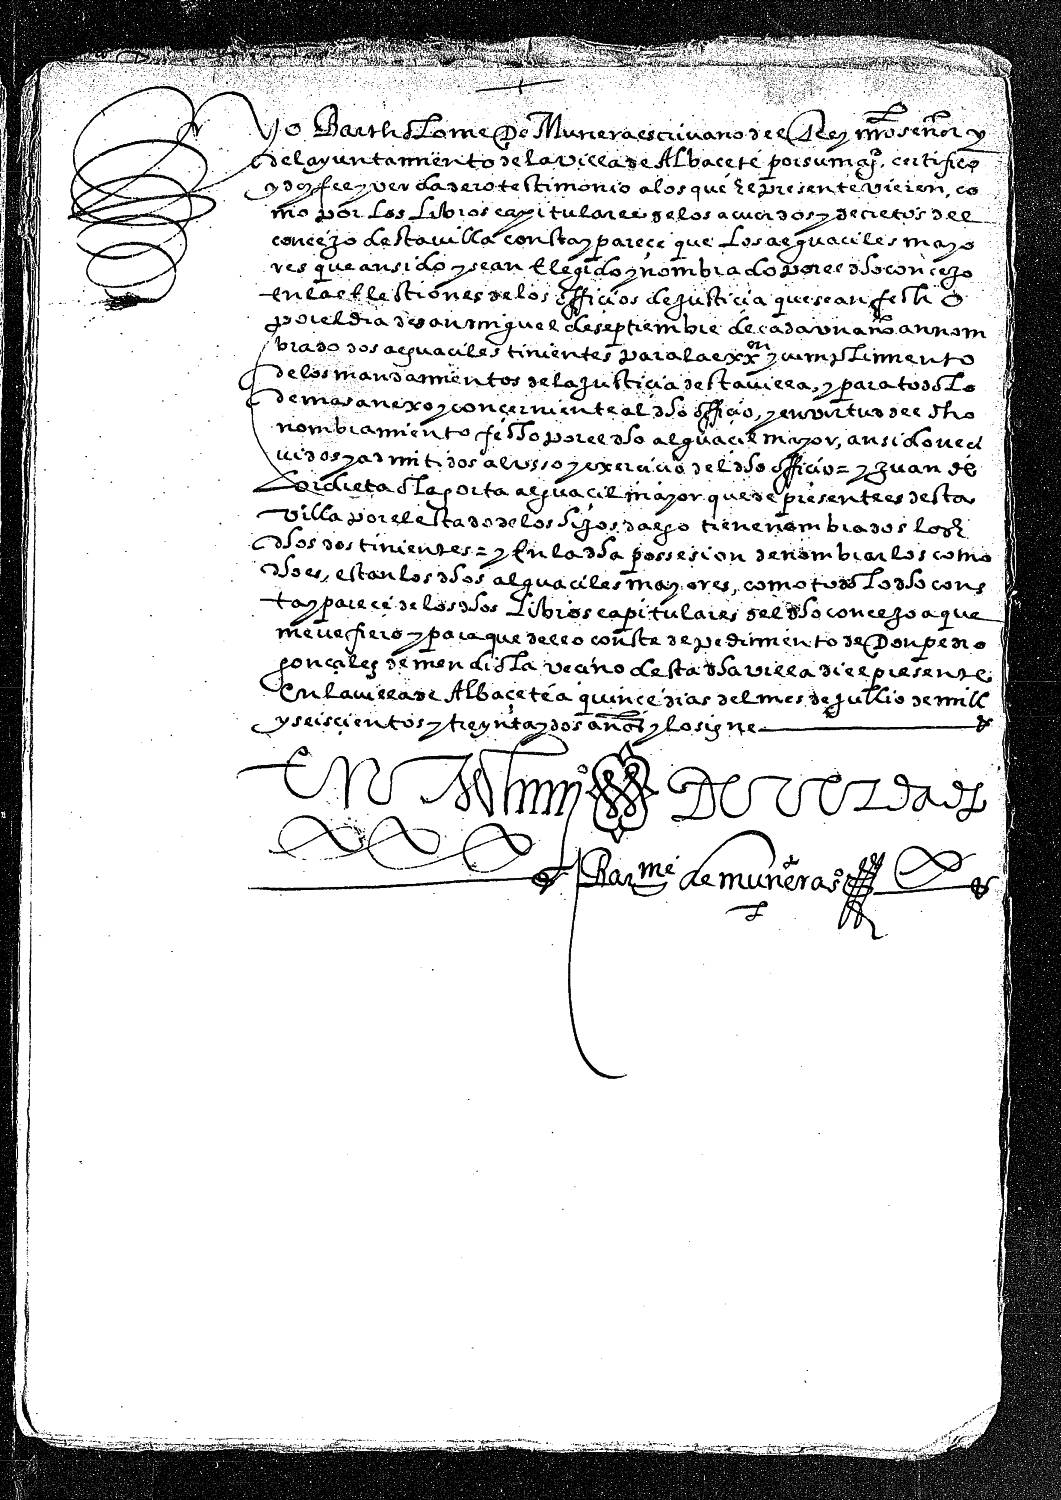 Certificación notarial de Bartolomé Munera, escribano real y del ayuntamiento de Albacete, a petición de Pedro González de Mendiola, dando fe del poder que tienen los alguaciles mayores para nombrar dos tenientes de alguacil.